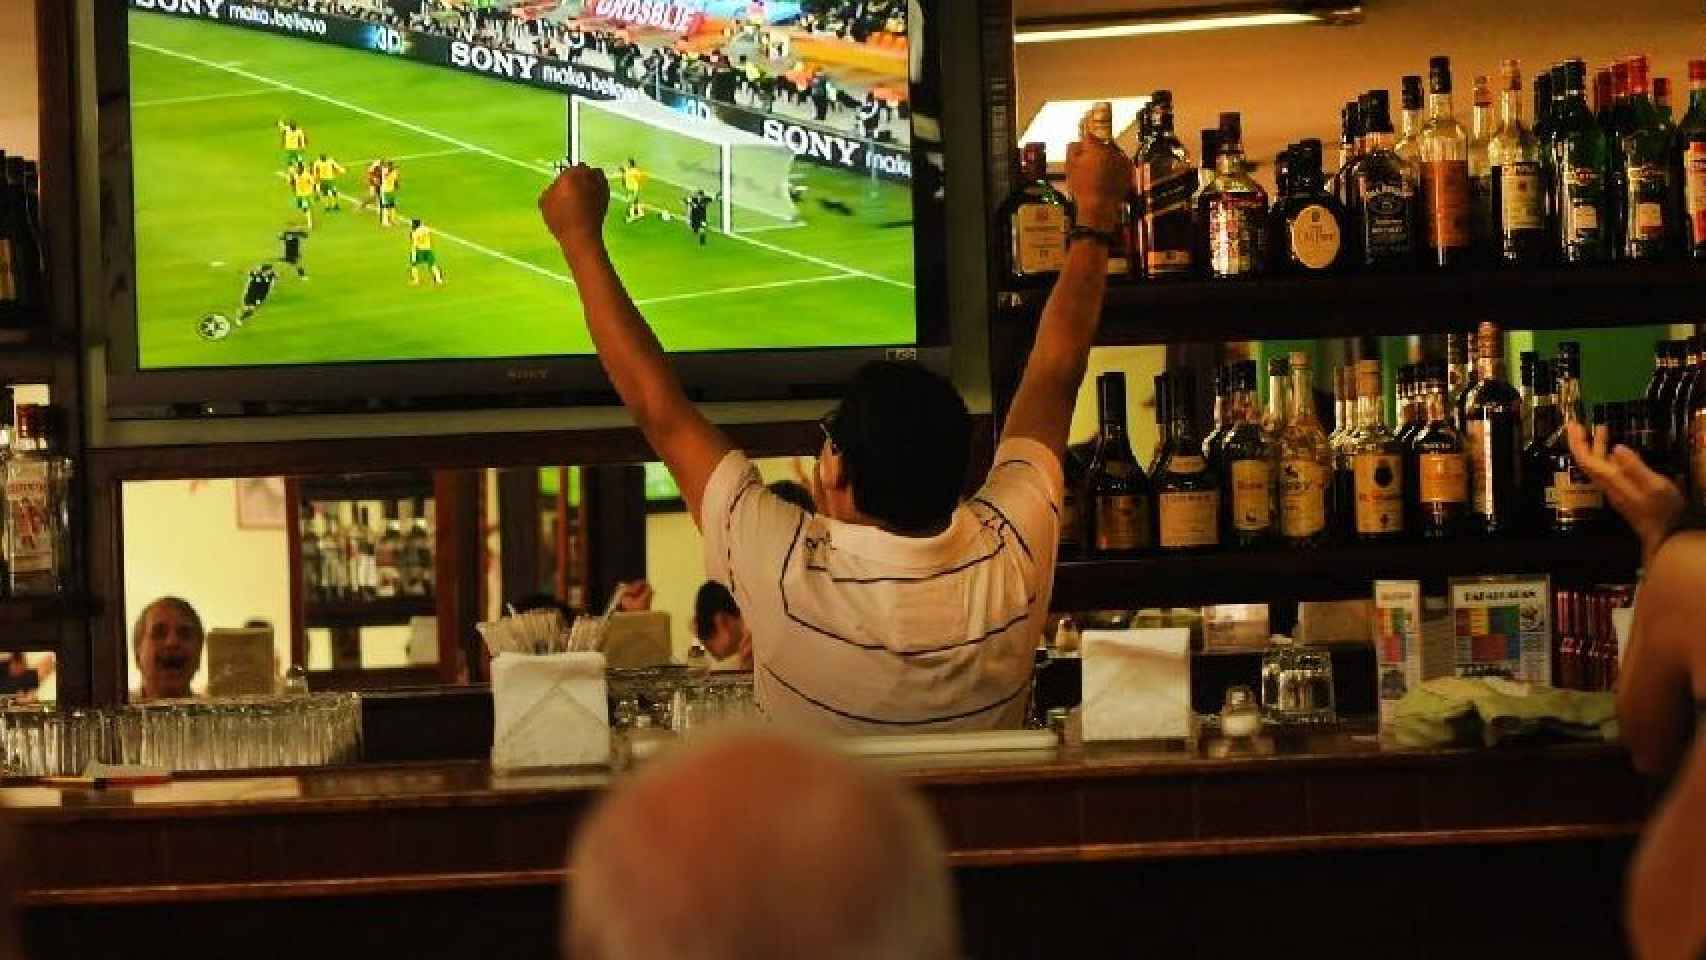 La prioridad de LaLiga ha estado en los bares deportivos que emiten fútbol sin licencia